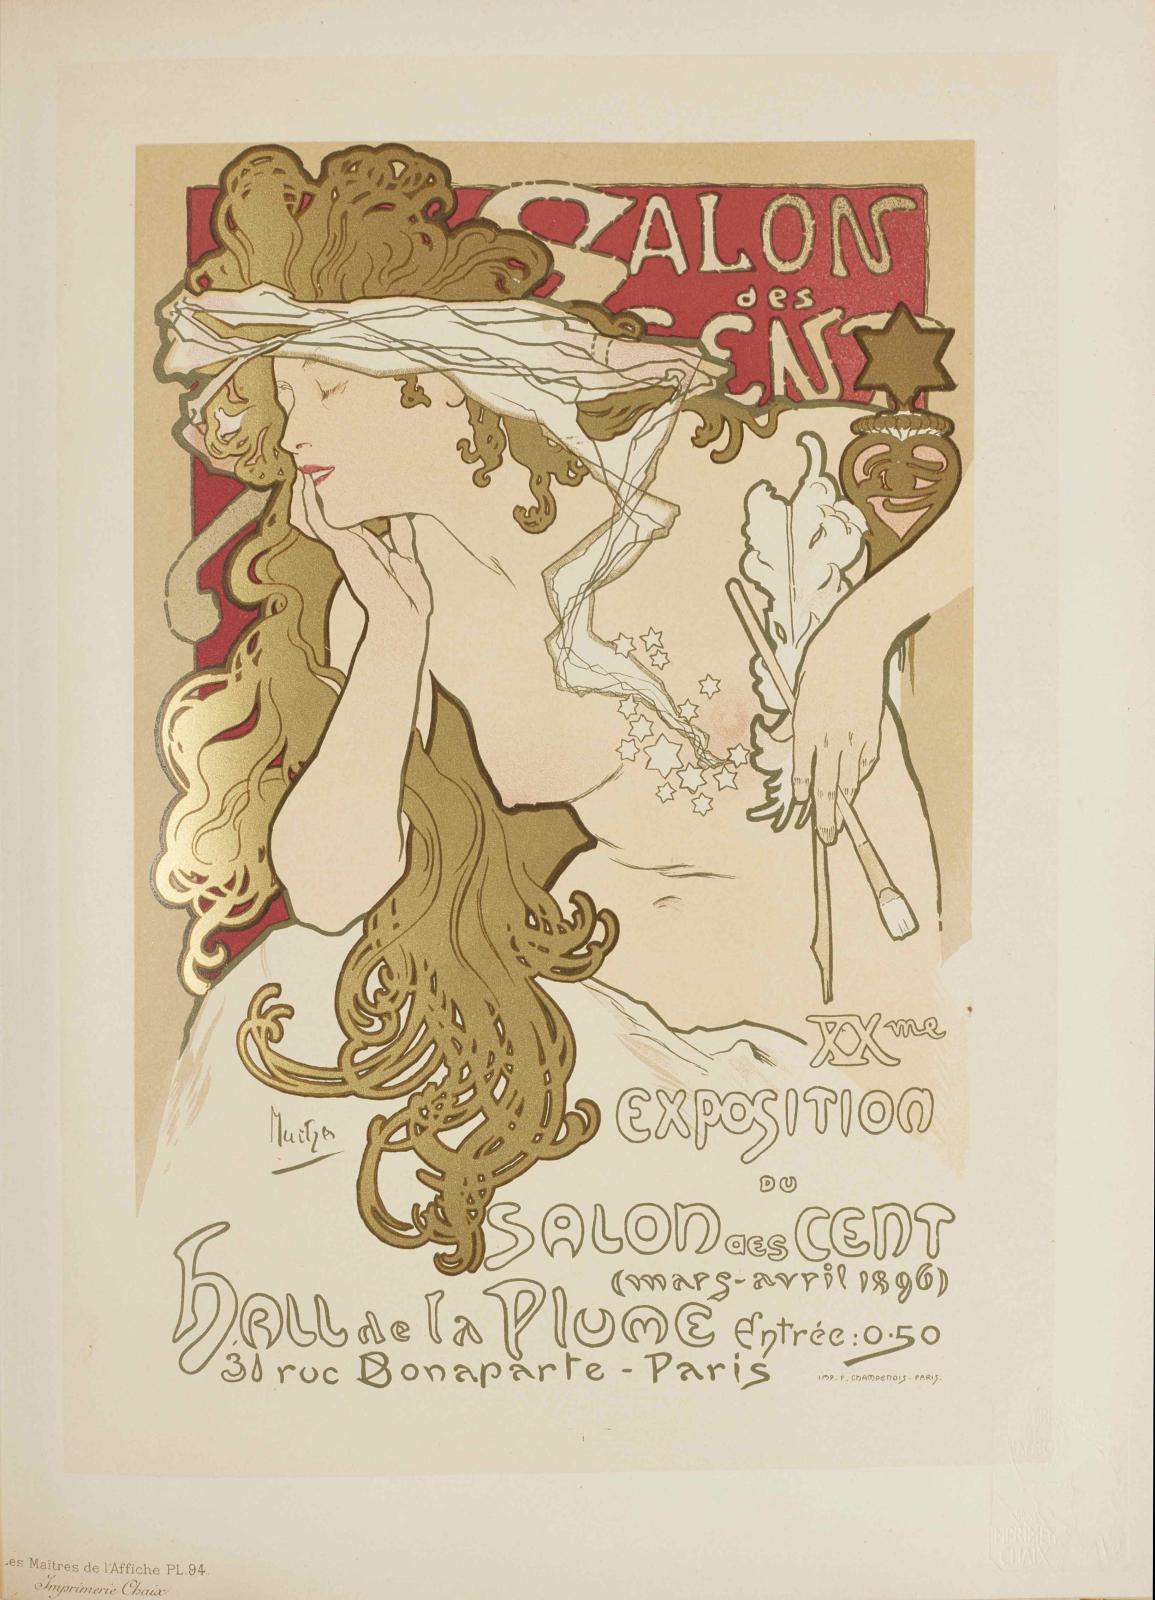 Les Maîtres de l’affiche, publication mensuelle contenant la reproduction des plus belles affiches illustrées des grands maîtres français et étrangers